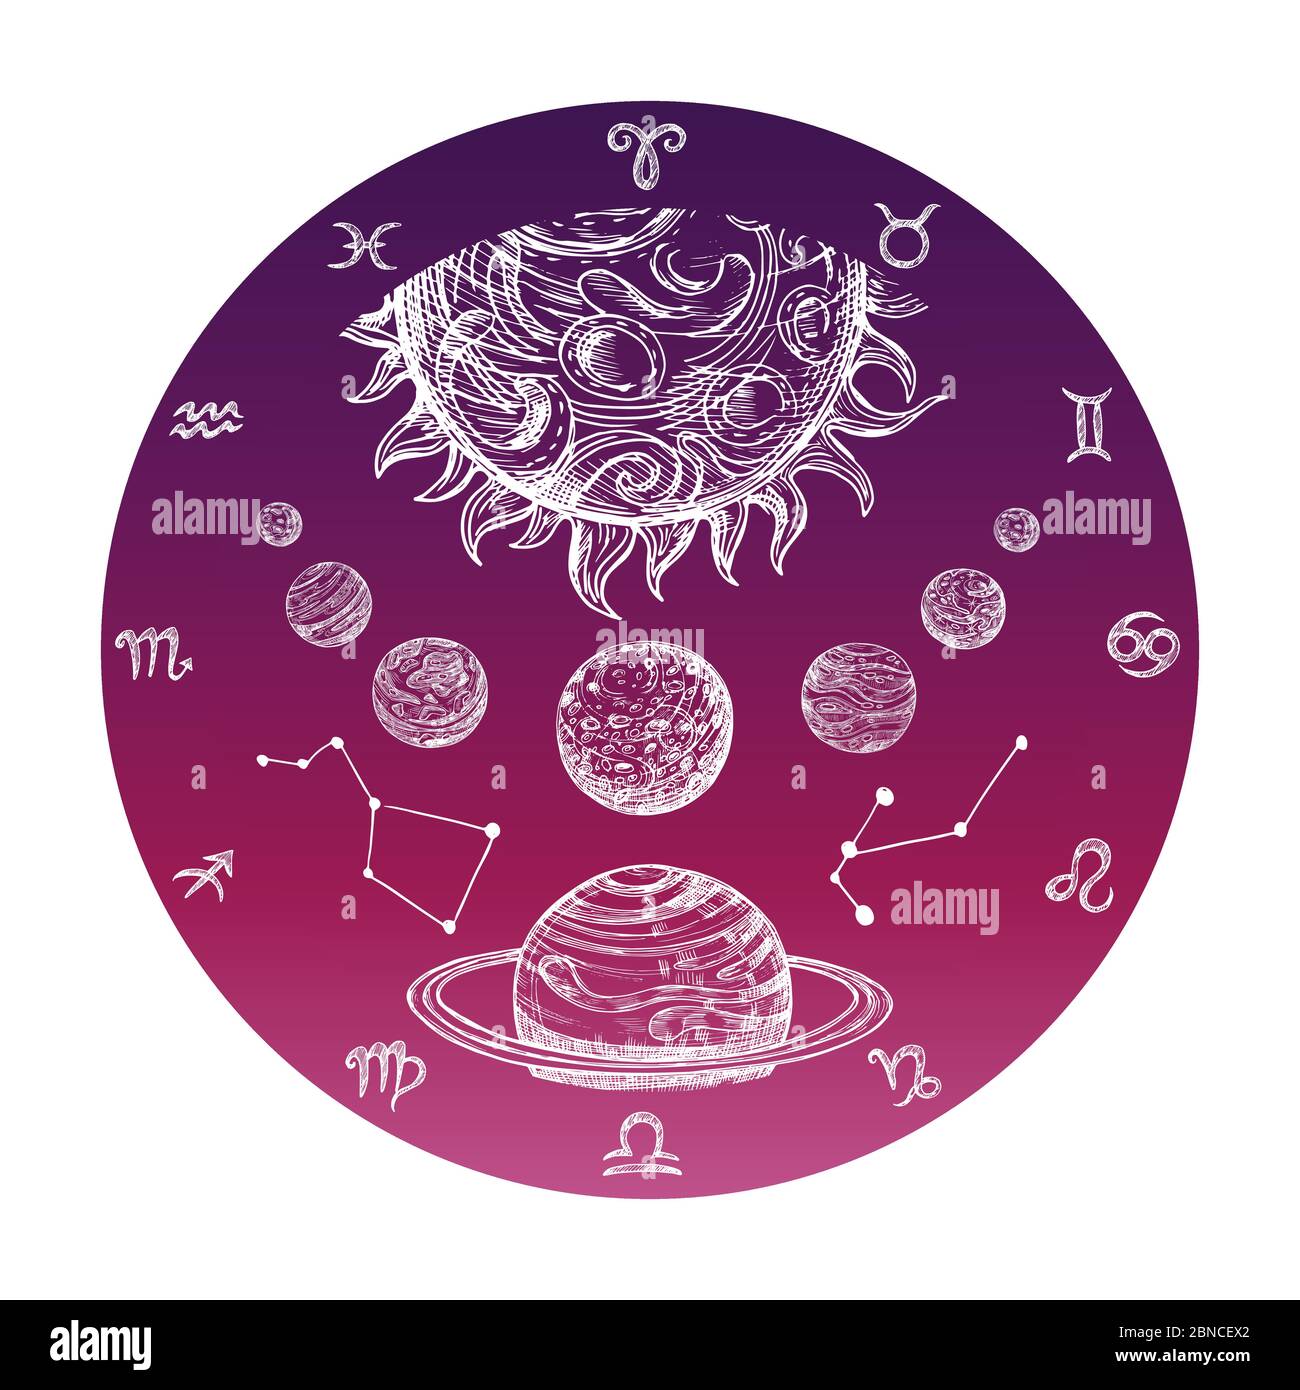 Farbe Hand gezeichnetes Astrologie Konzept mit Sternzeichen und Planetensystem Vektor Illustration. Astrologie und Tierkreis Symbol Horoskop Stock Vektor